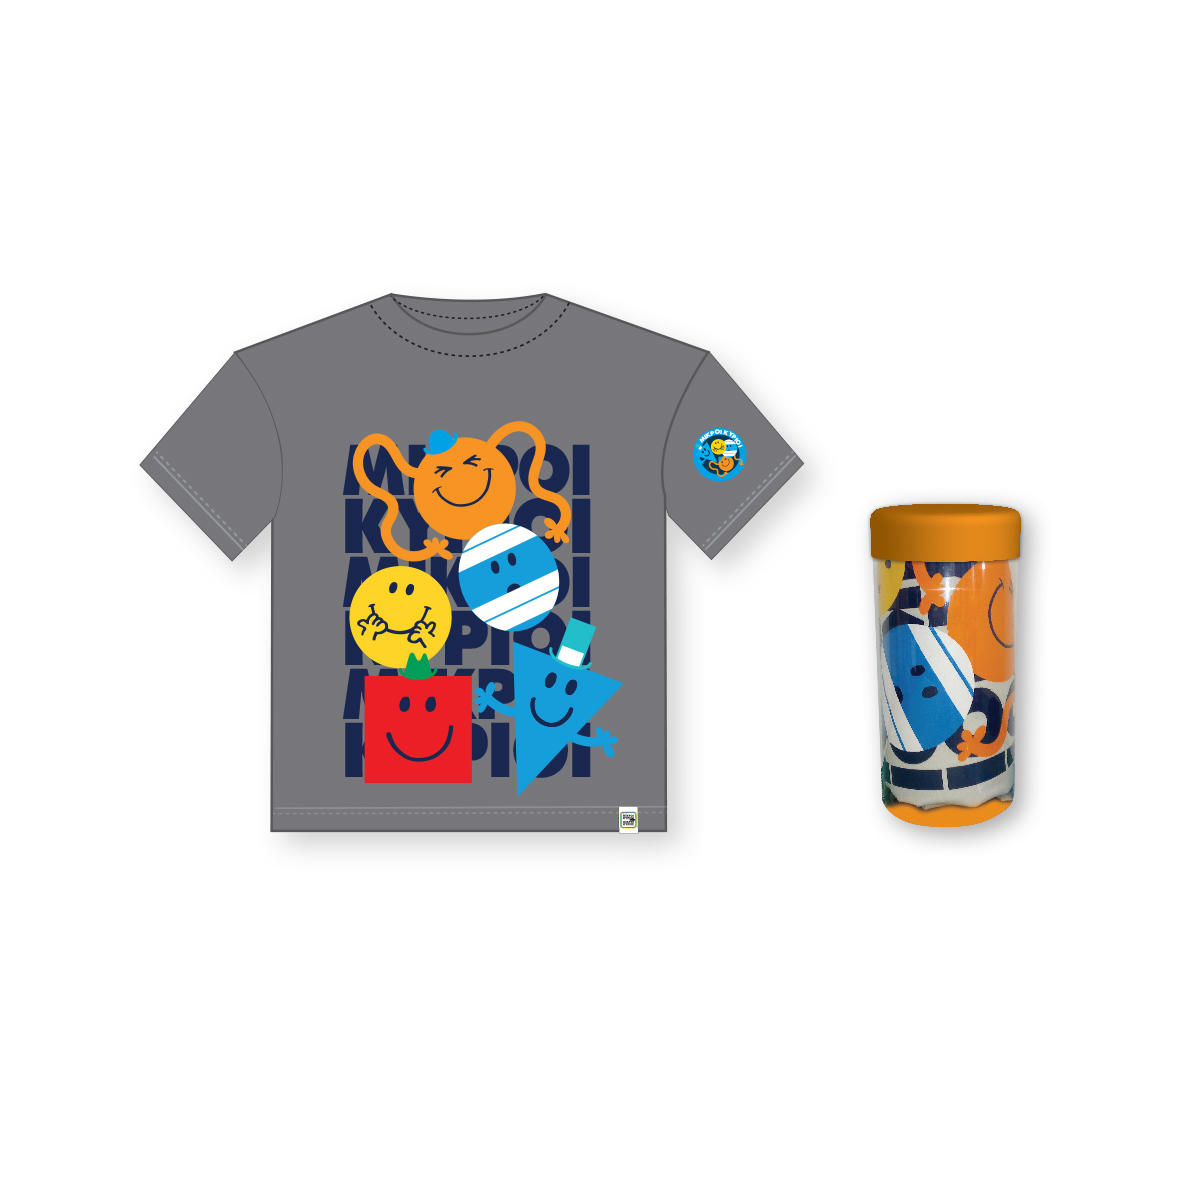 Μικροί Κύριοι - T-Shirt Παιδικό Μπλουζάκι | Συλλογή Μικροί Κύριοι - Μικρές Κυρίες | Χάρτινη Πολη  Ηλικία 5-6 HP.TST.0012